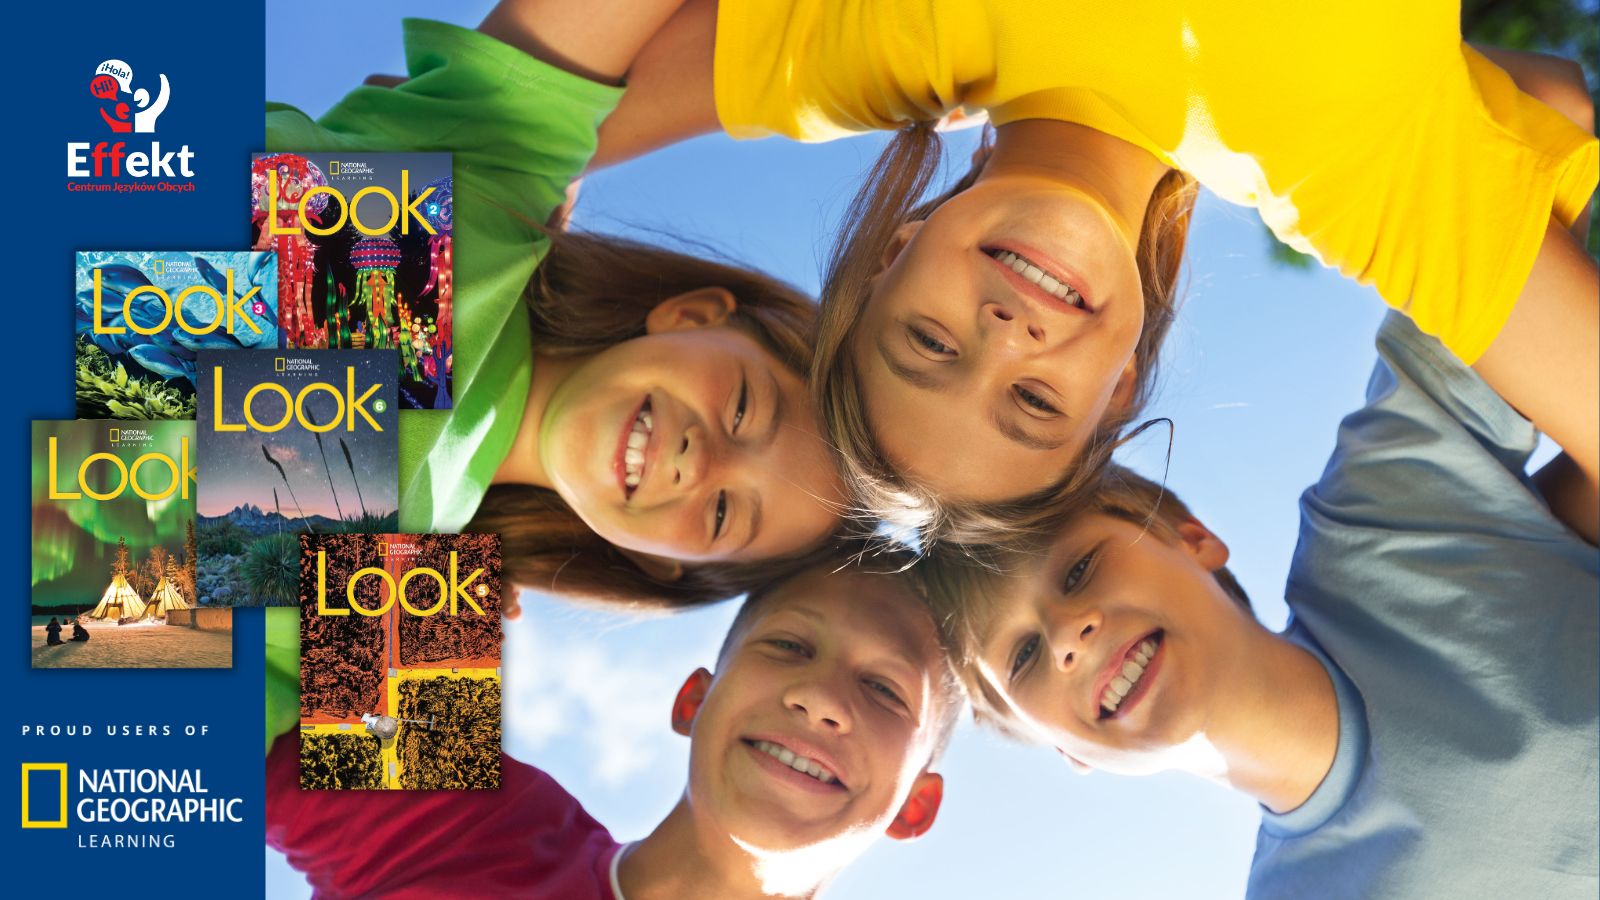 Angielski dla dzieci na kursach w CJO EFFEKT korzystających z podręcznika Look pomaga odkrywać świat i czerpać radość z nauki